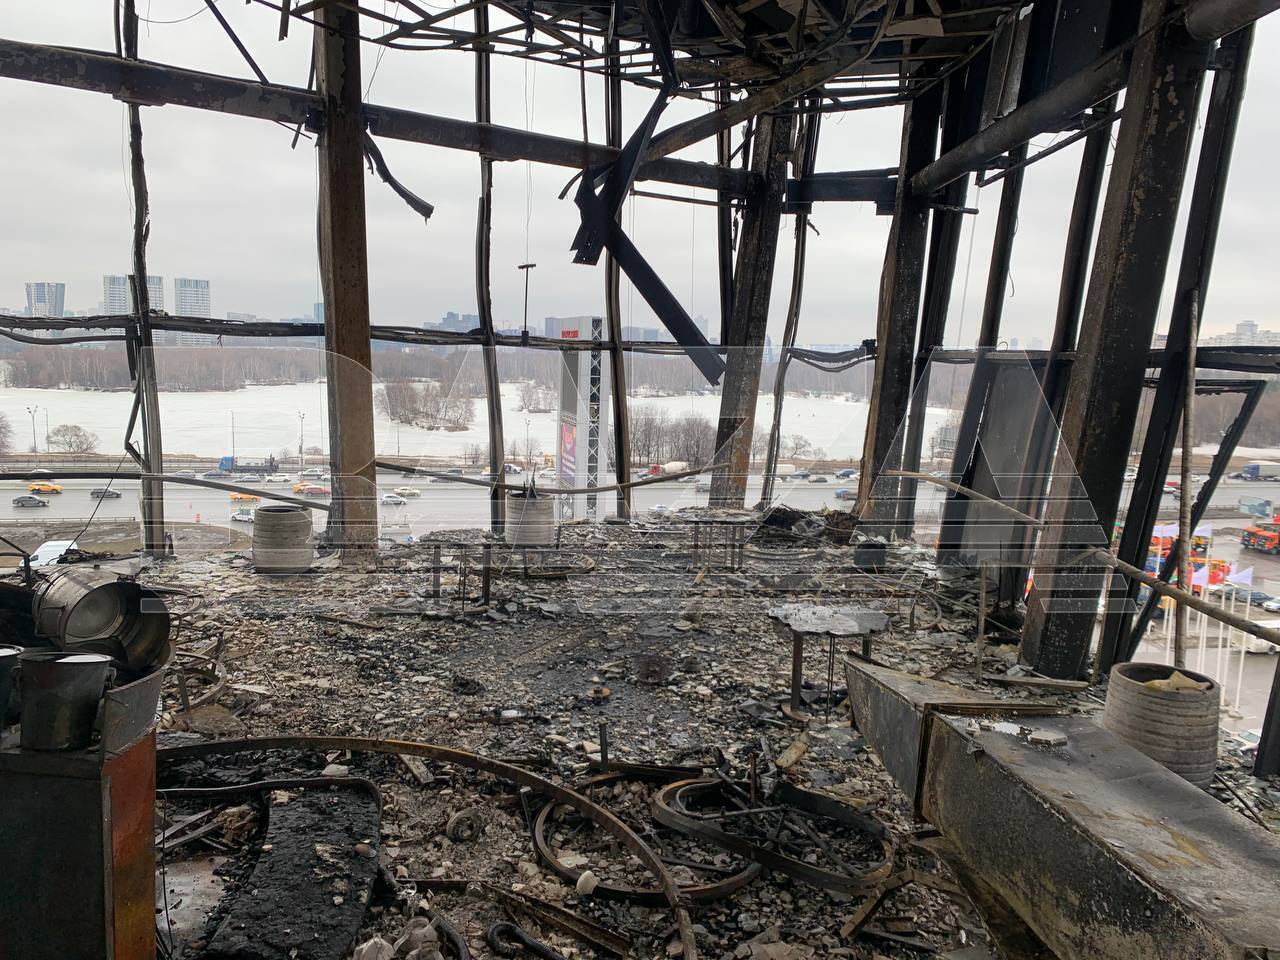 Суцільне згарище: як виглядає "Крокус Сіті Холл" після теракту. Фото і відео